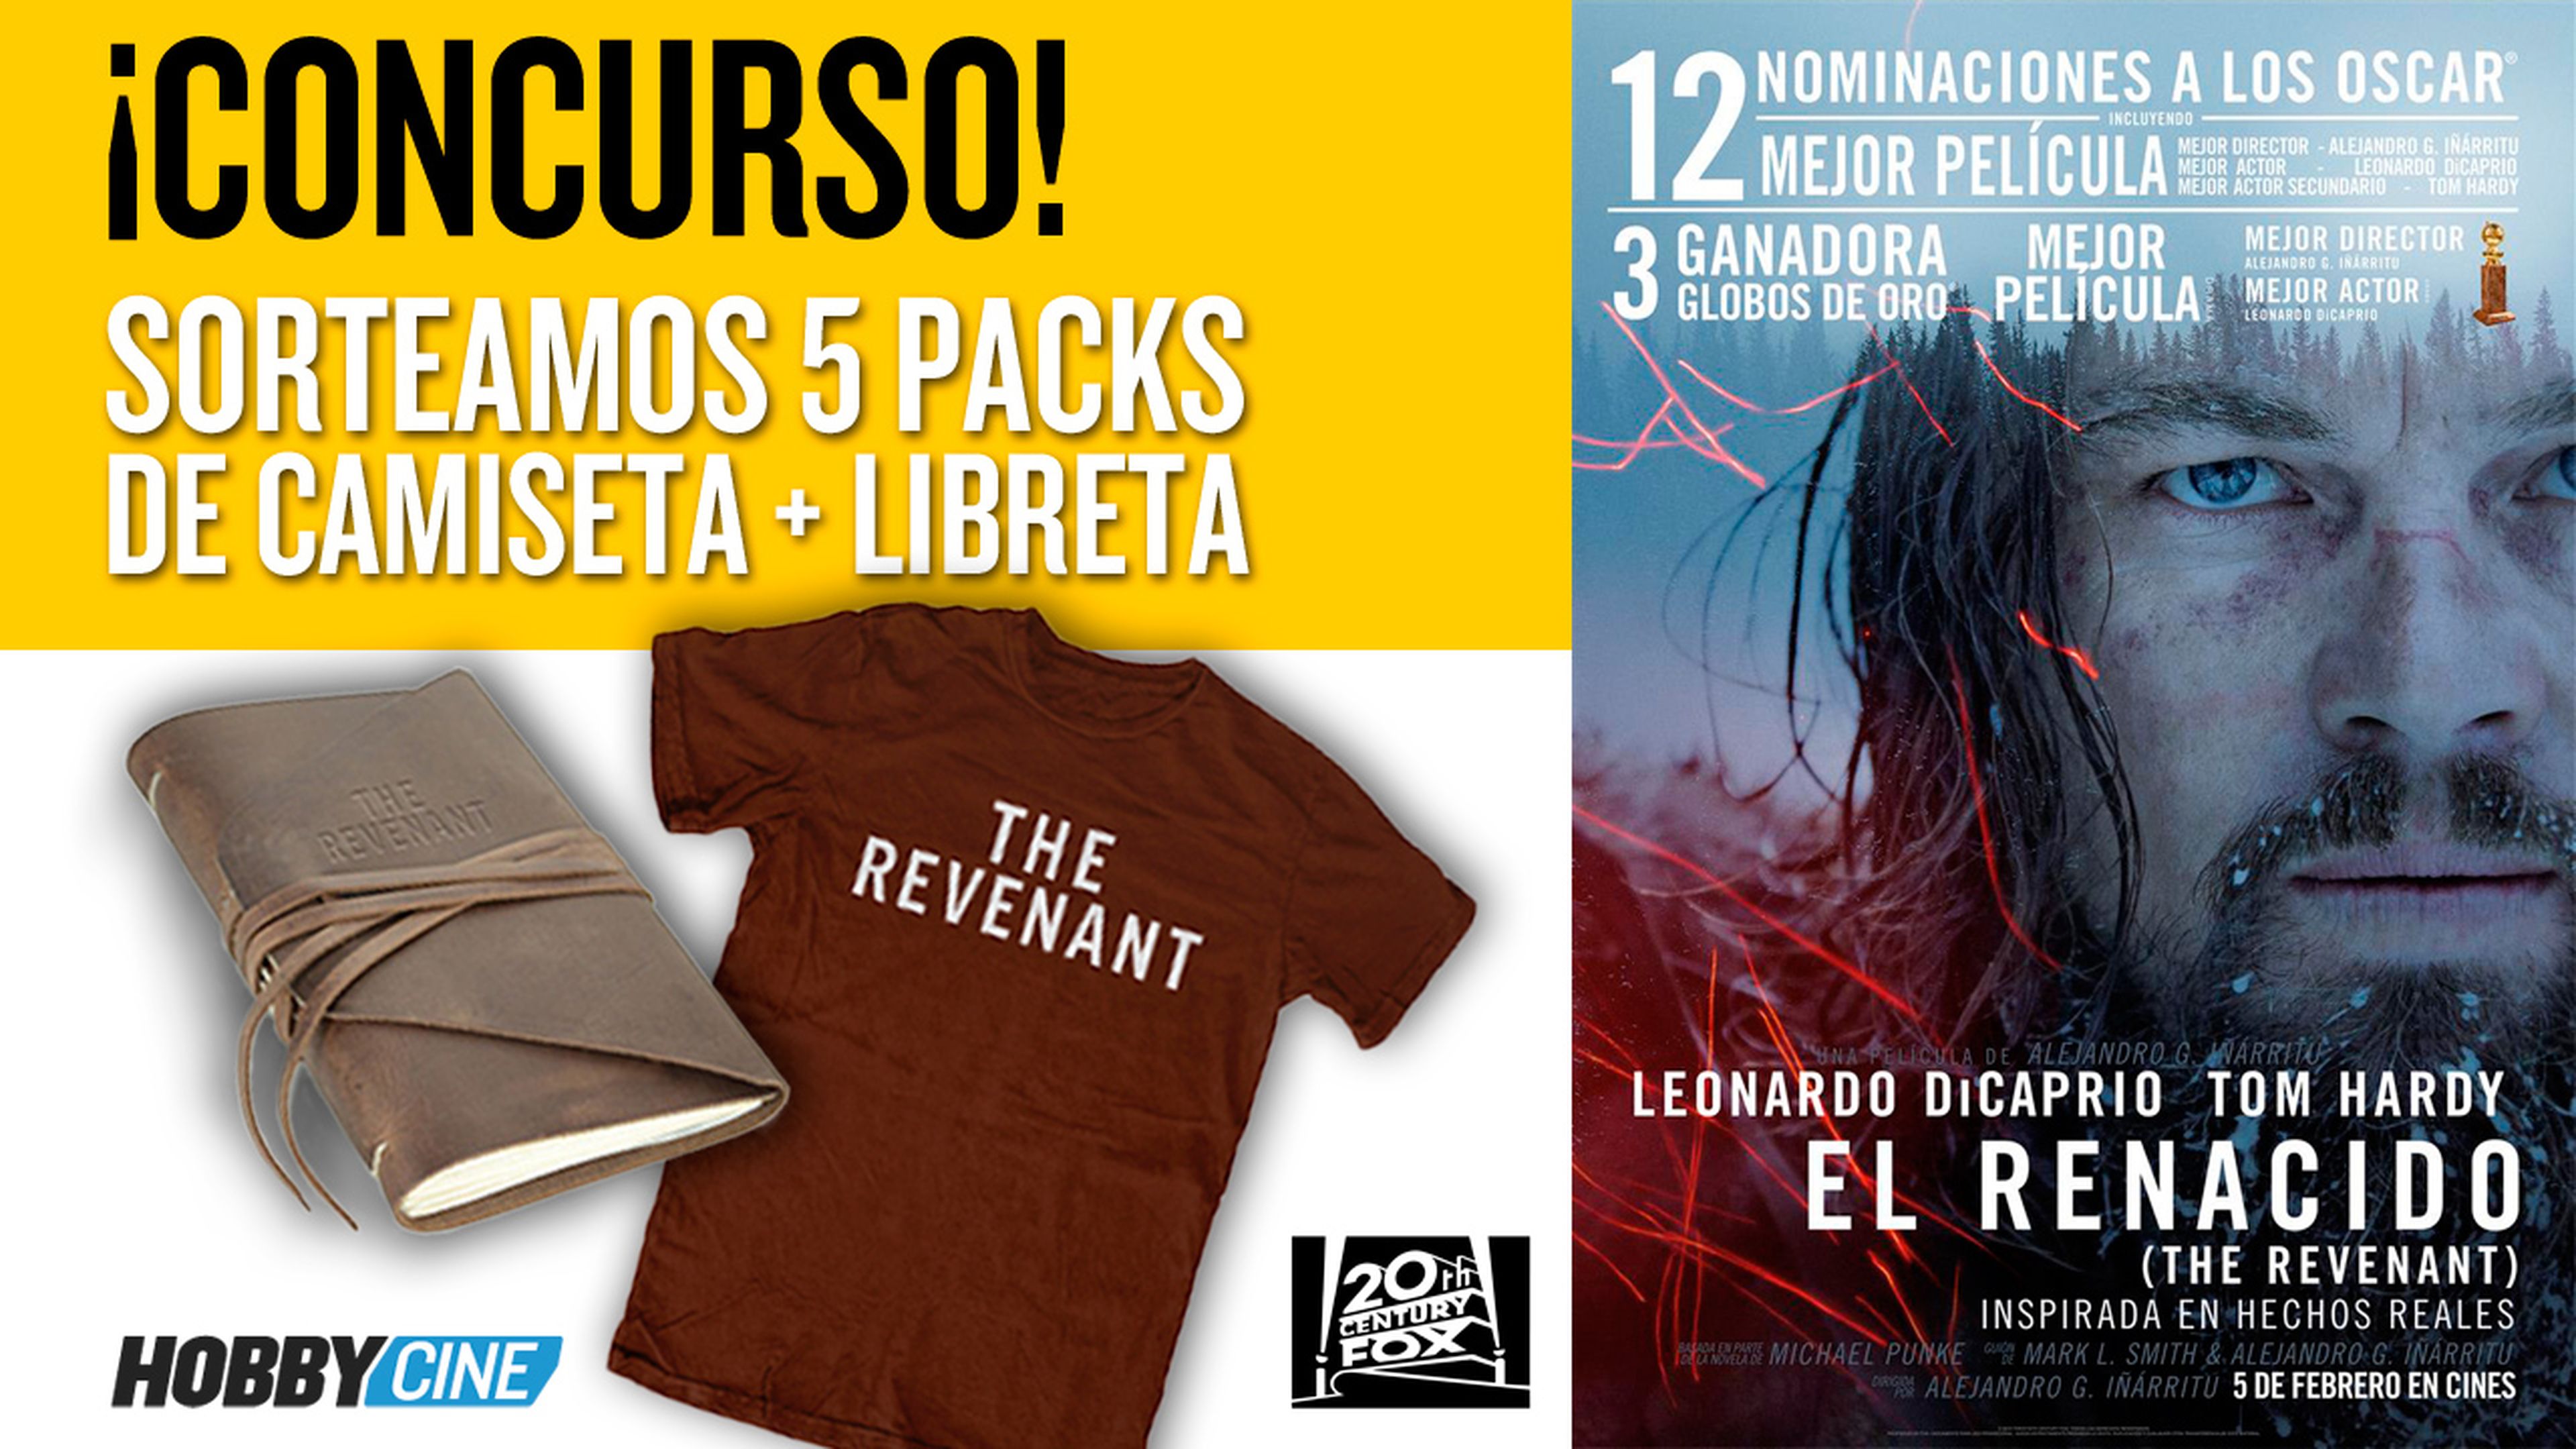 Concurso El renacido - Consigue la camiseta y libreta oficial de la película